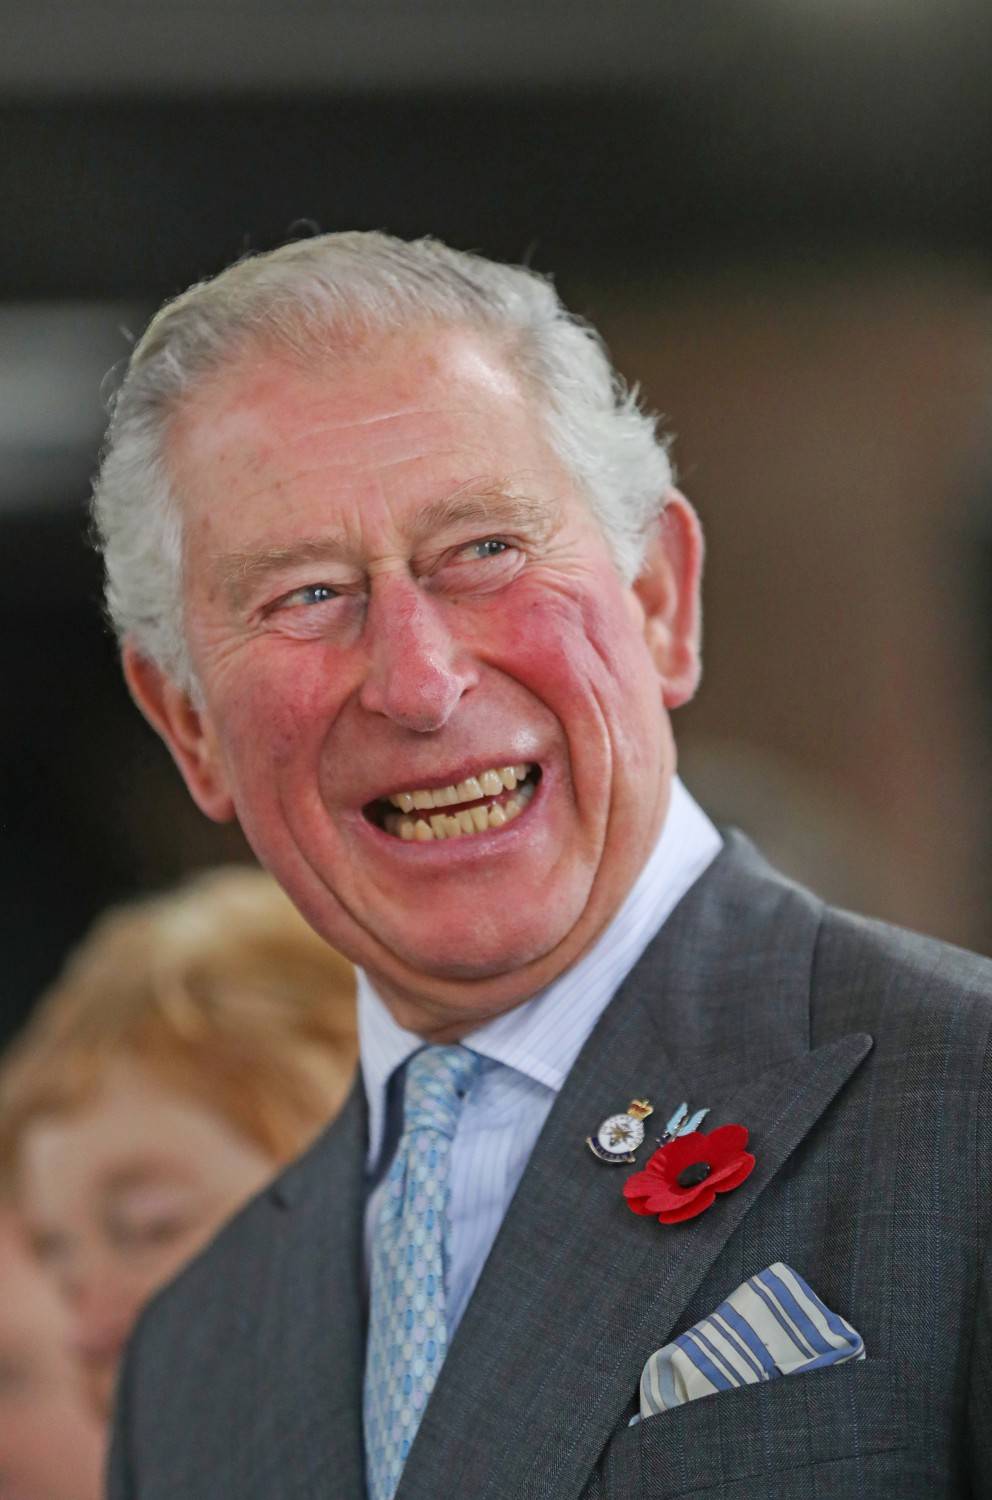 L'indiscrezione: "Il principe Carlo pagherà 2,5 milioni per la sicurezza di Harry e Meghan"